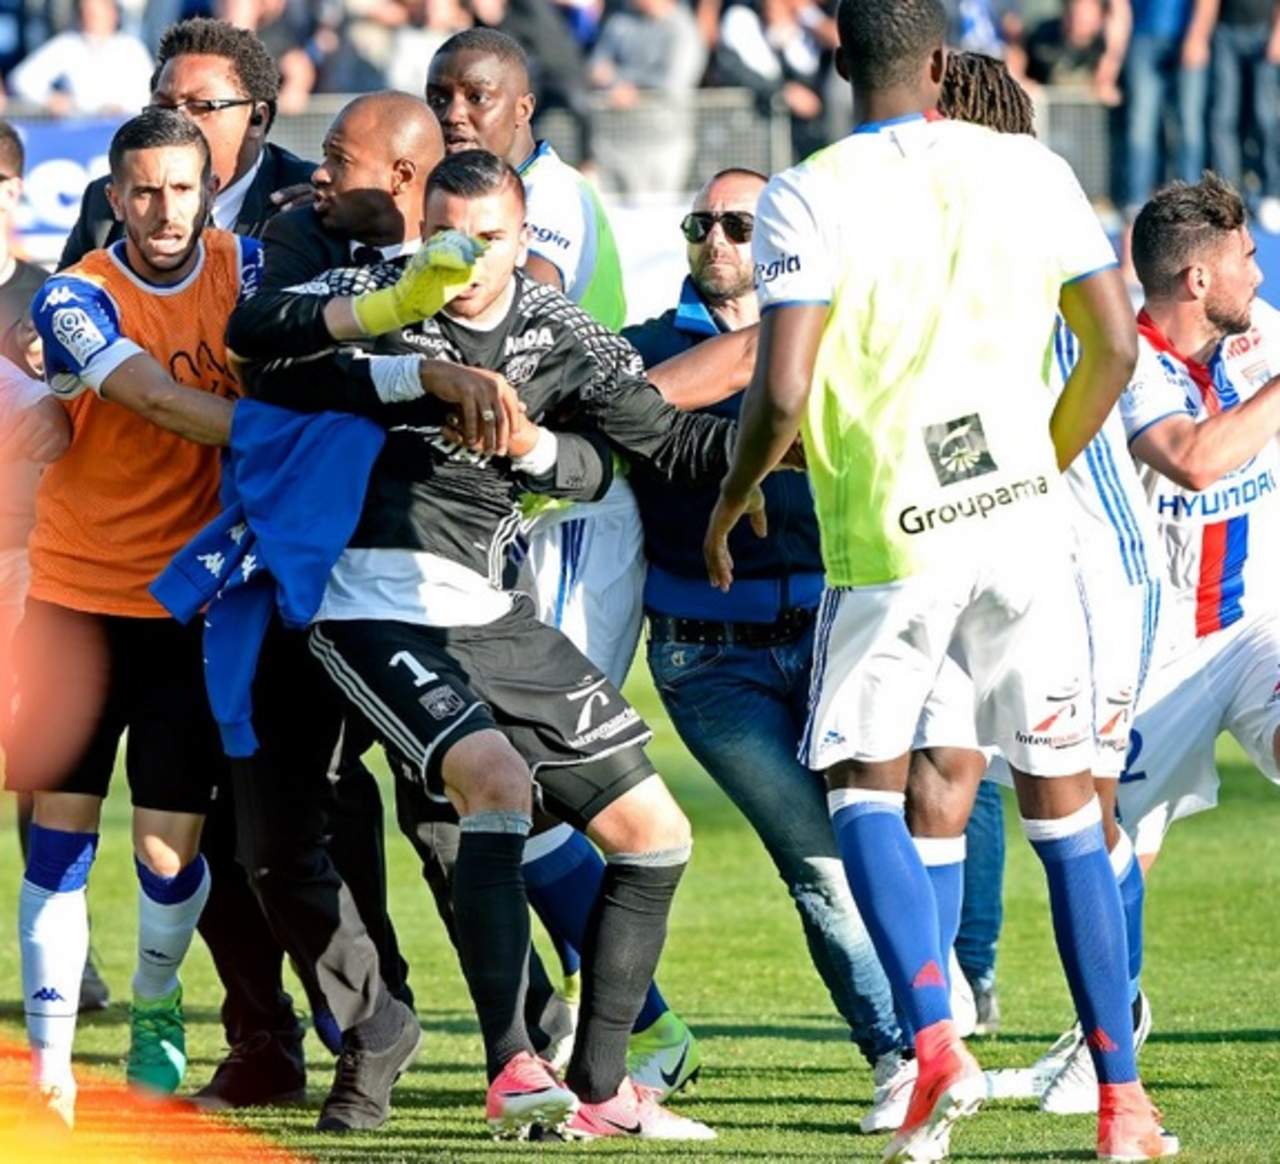 Anthony Lopes, arquero de Lyon, fue encarado por un aficionado, Lopes lo empujó, mientras se producían altercados entre otros hinchas locales y jugadores del Lyon. (Especial)